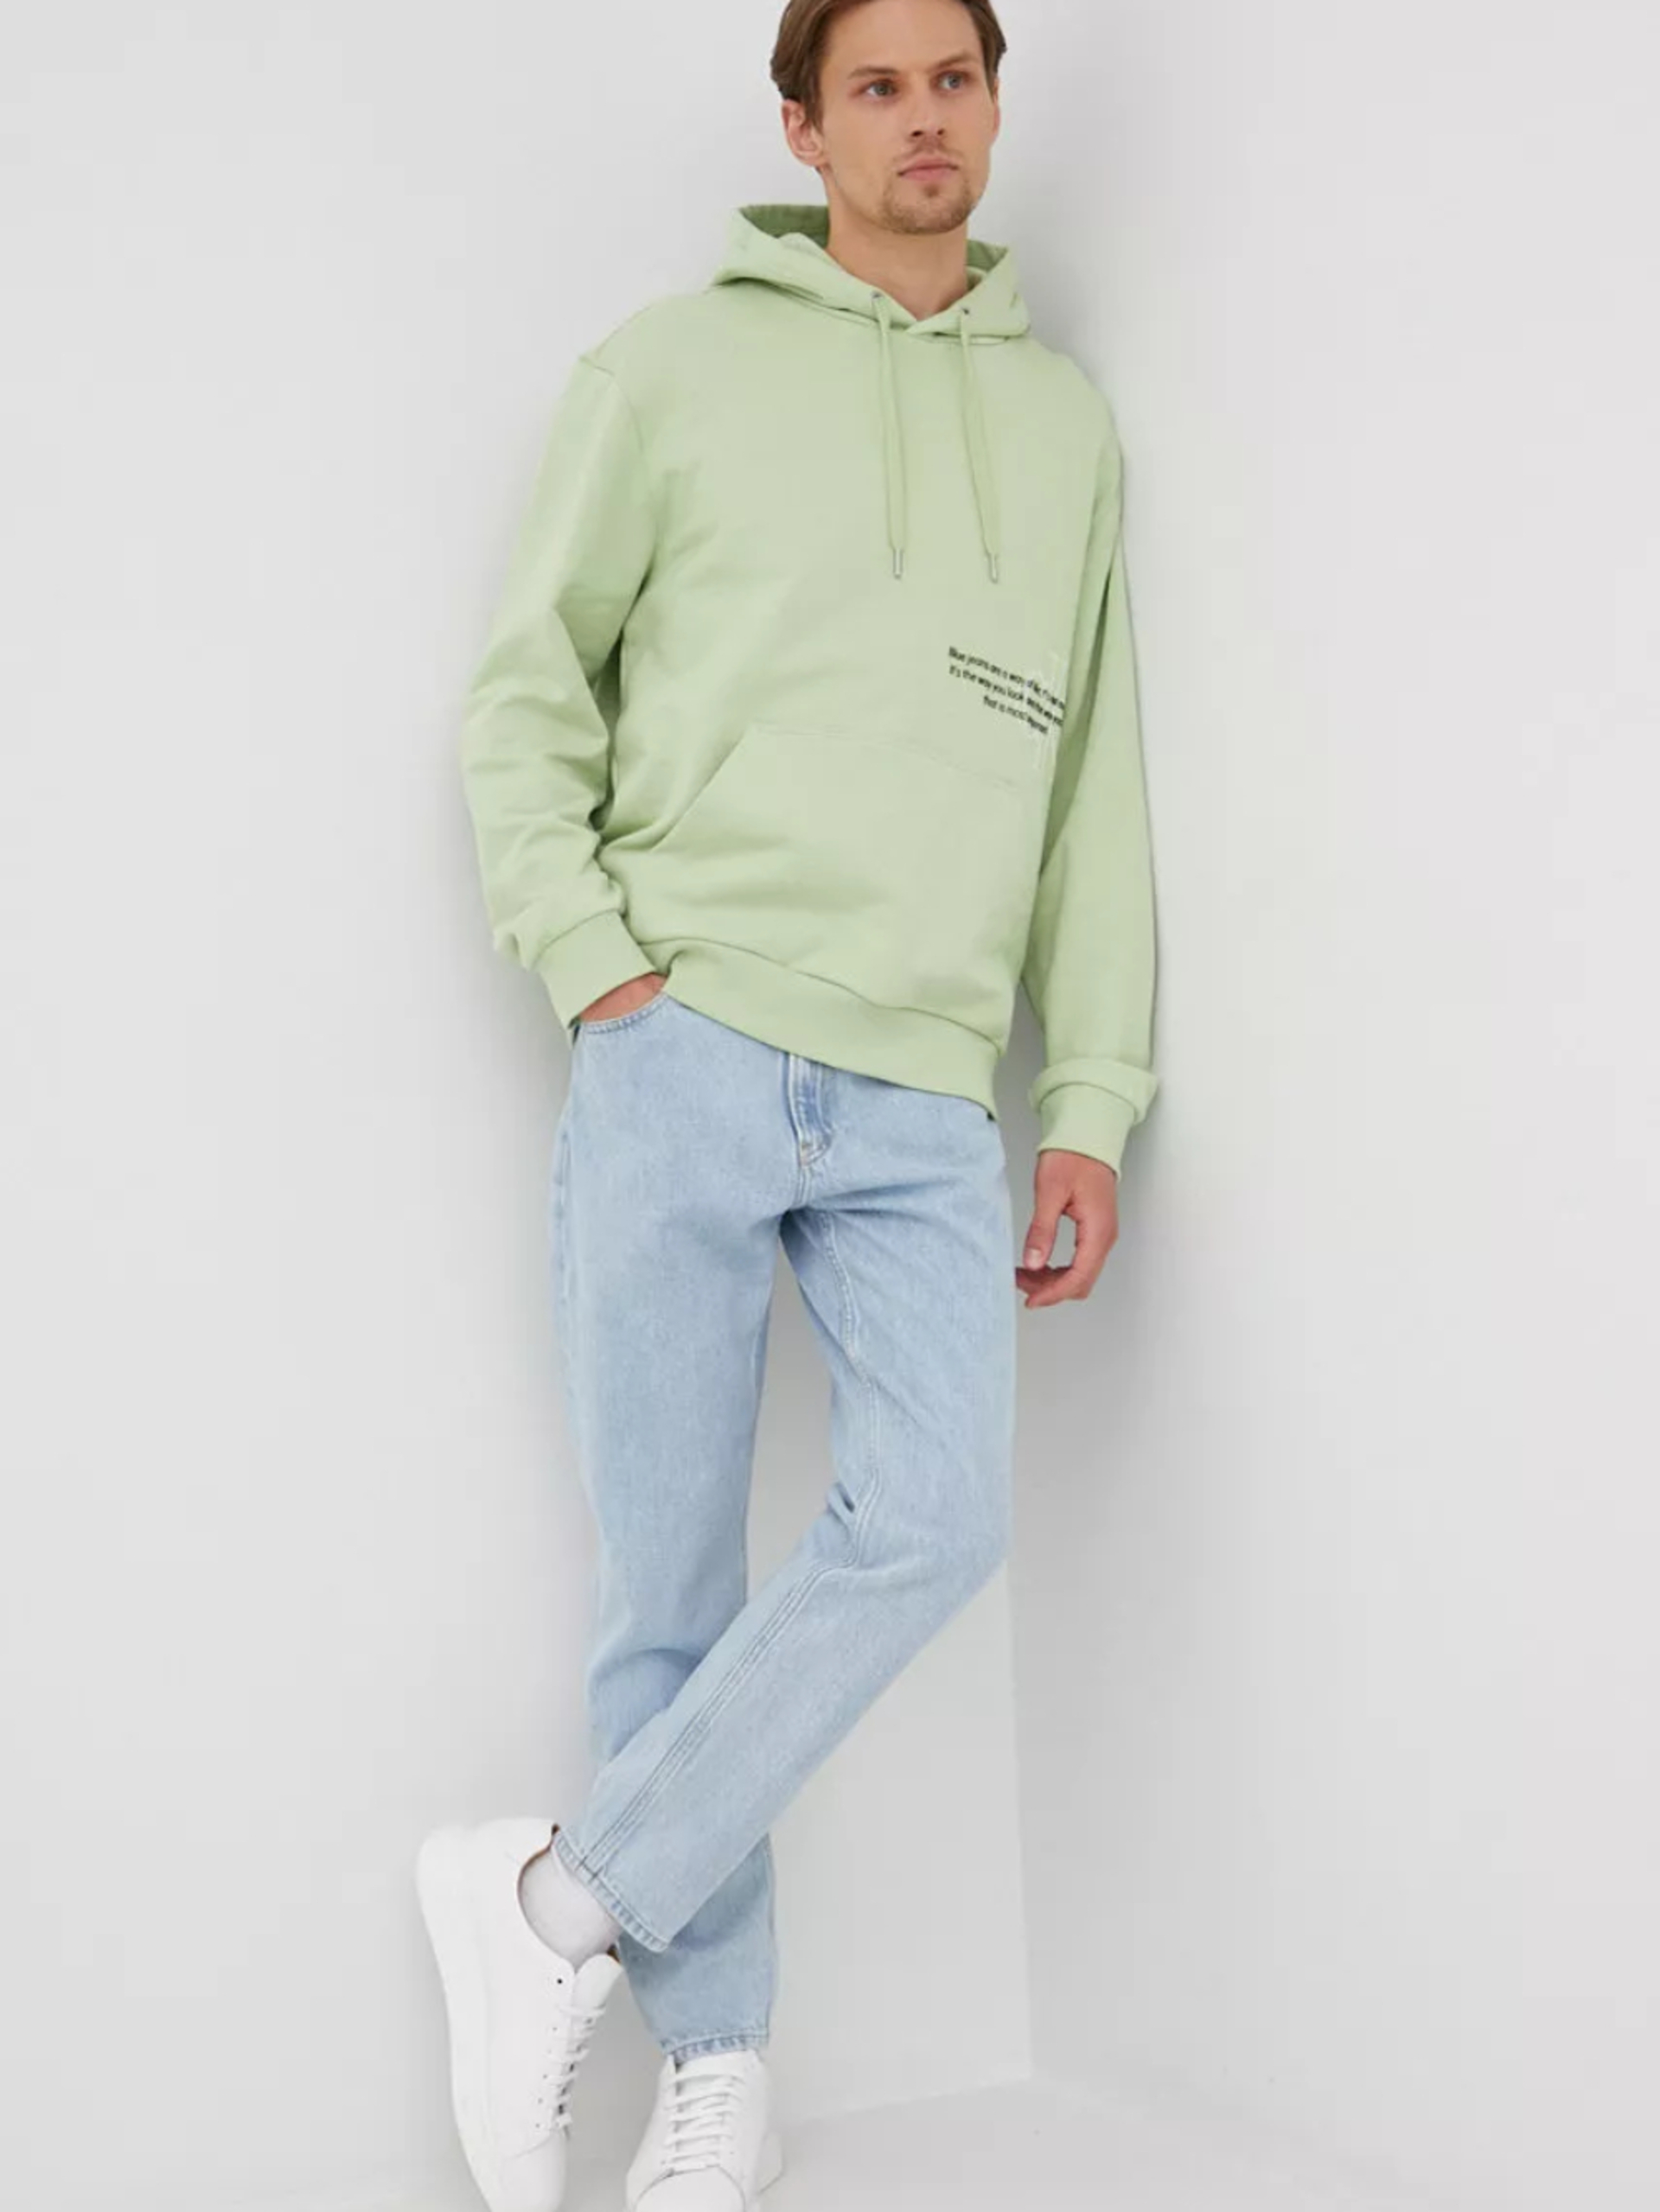 Calvin Klein pánská světle zelená mikina. - M (L99)